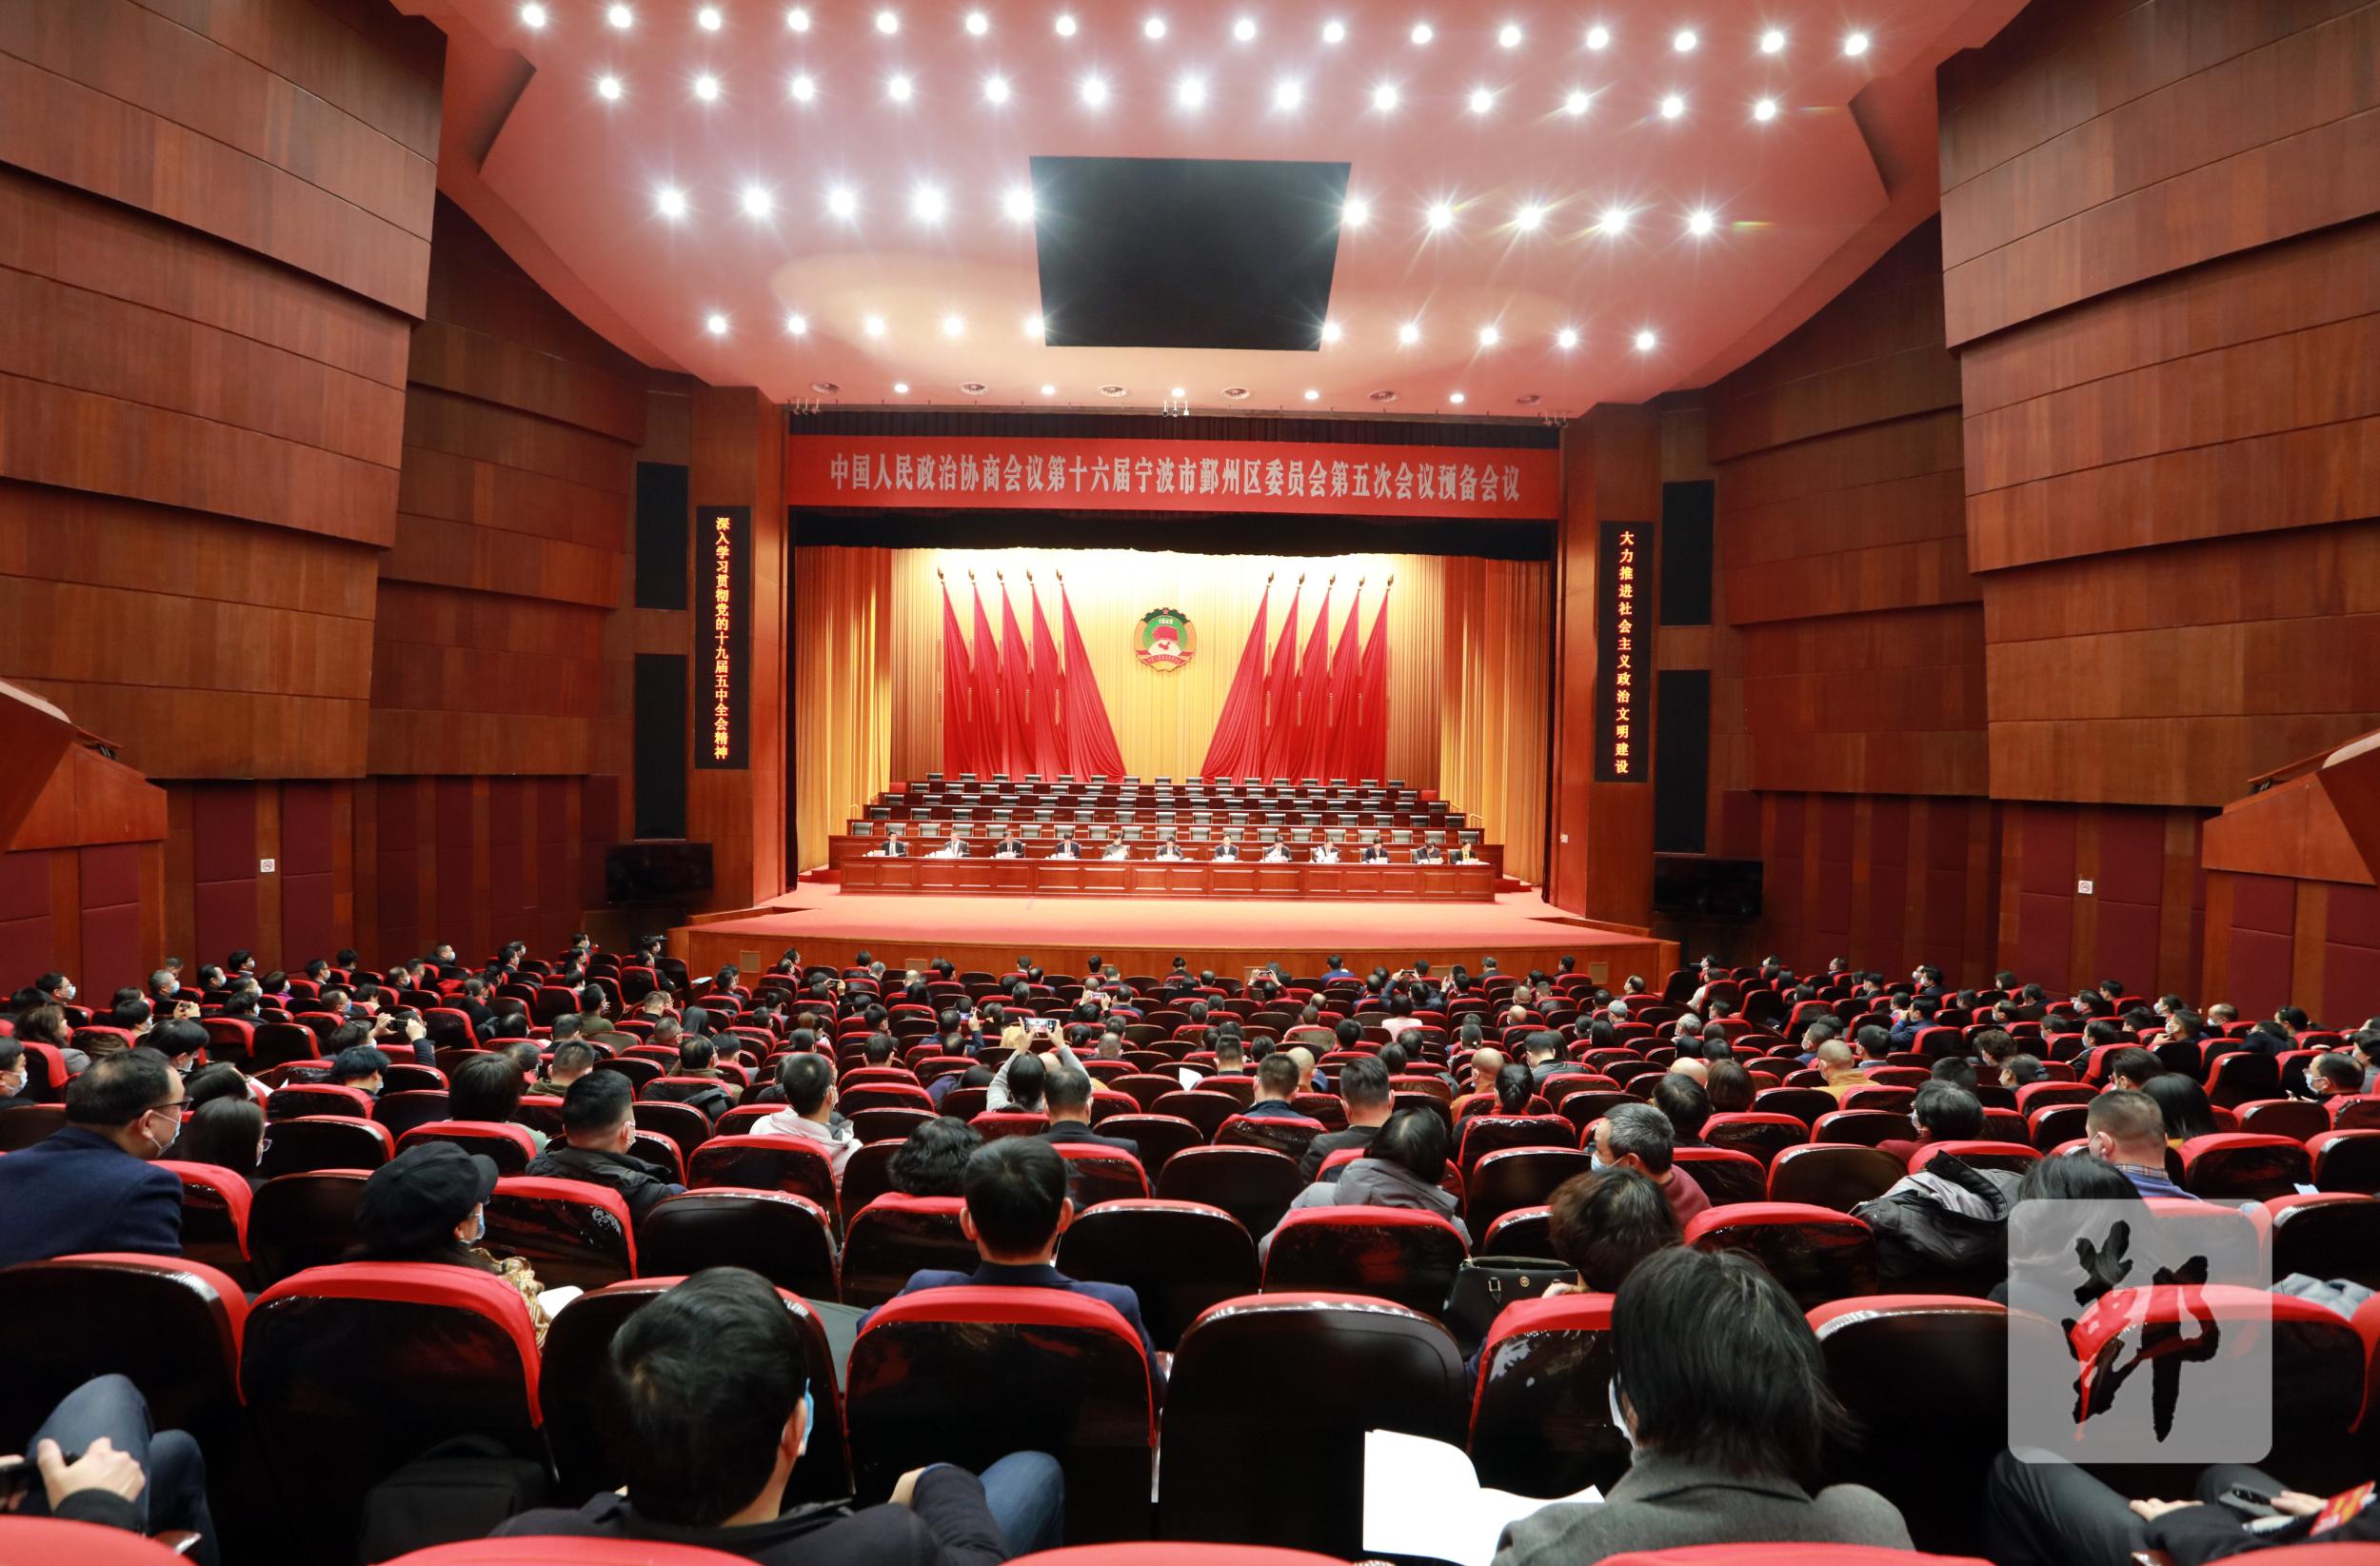 宁波市鄞州区政协十六届五次会议举行预备会议 审议通过大会议程,日程